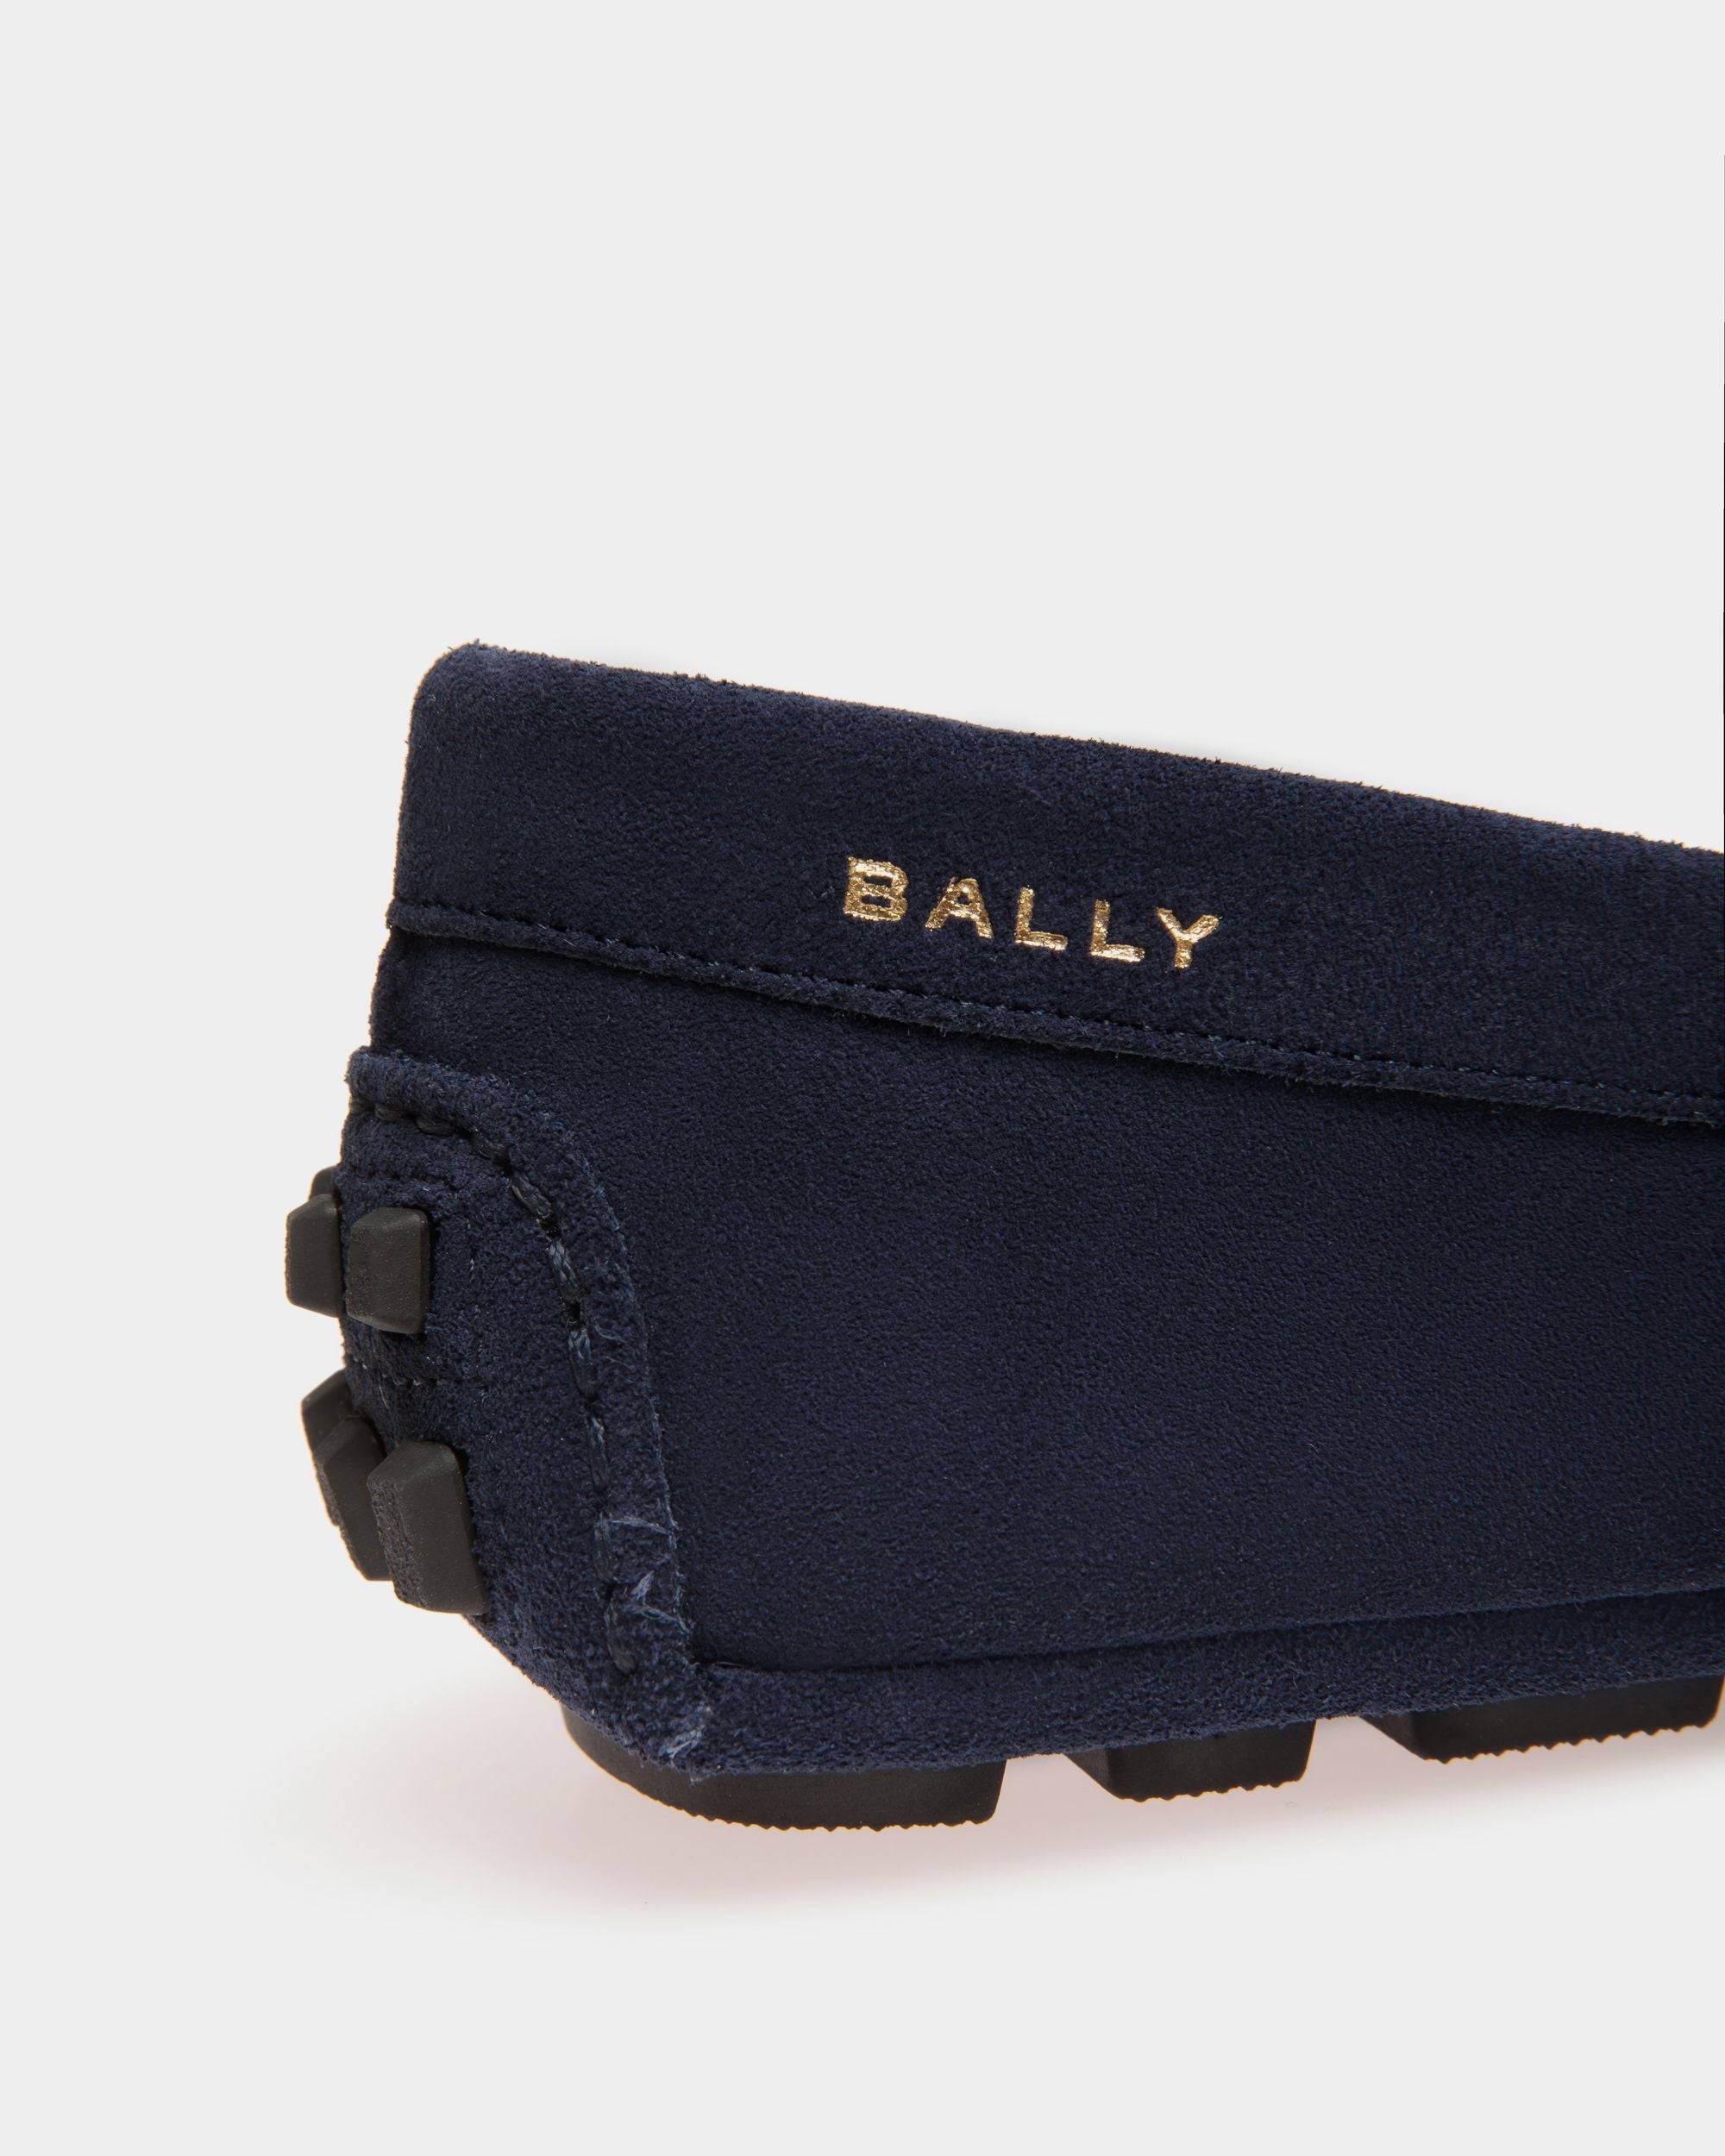 Kerbs | Driver-Schuh für Damen aus blauem Veloursleder | Bally | Still Life Detail